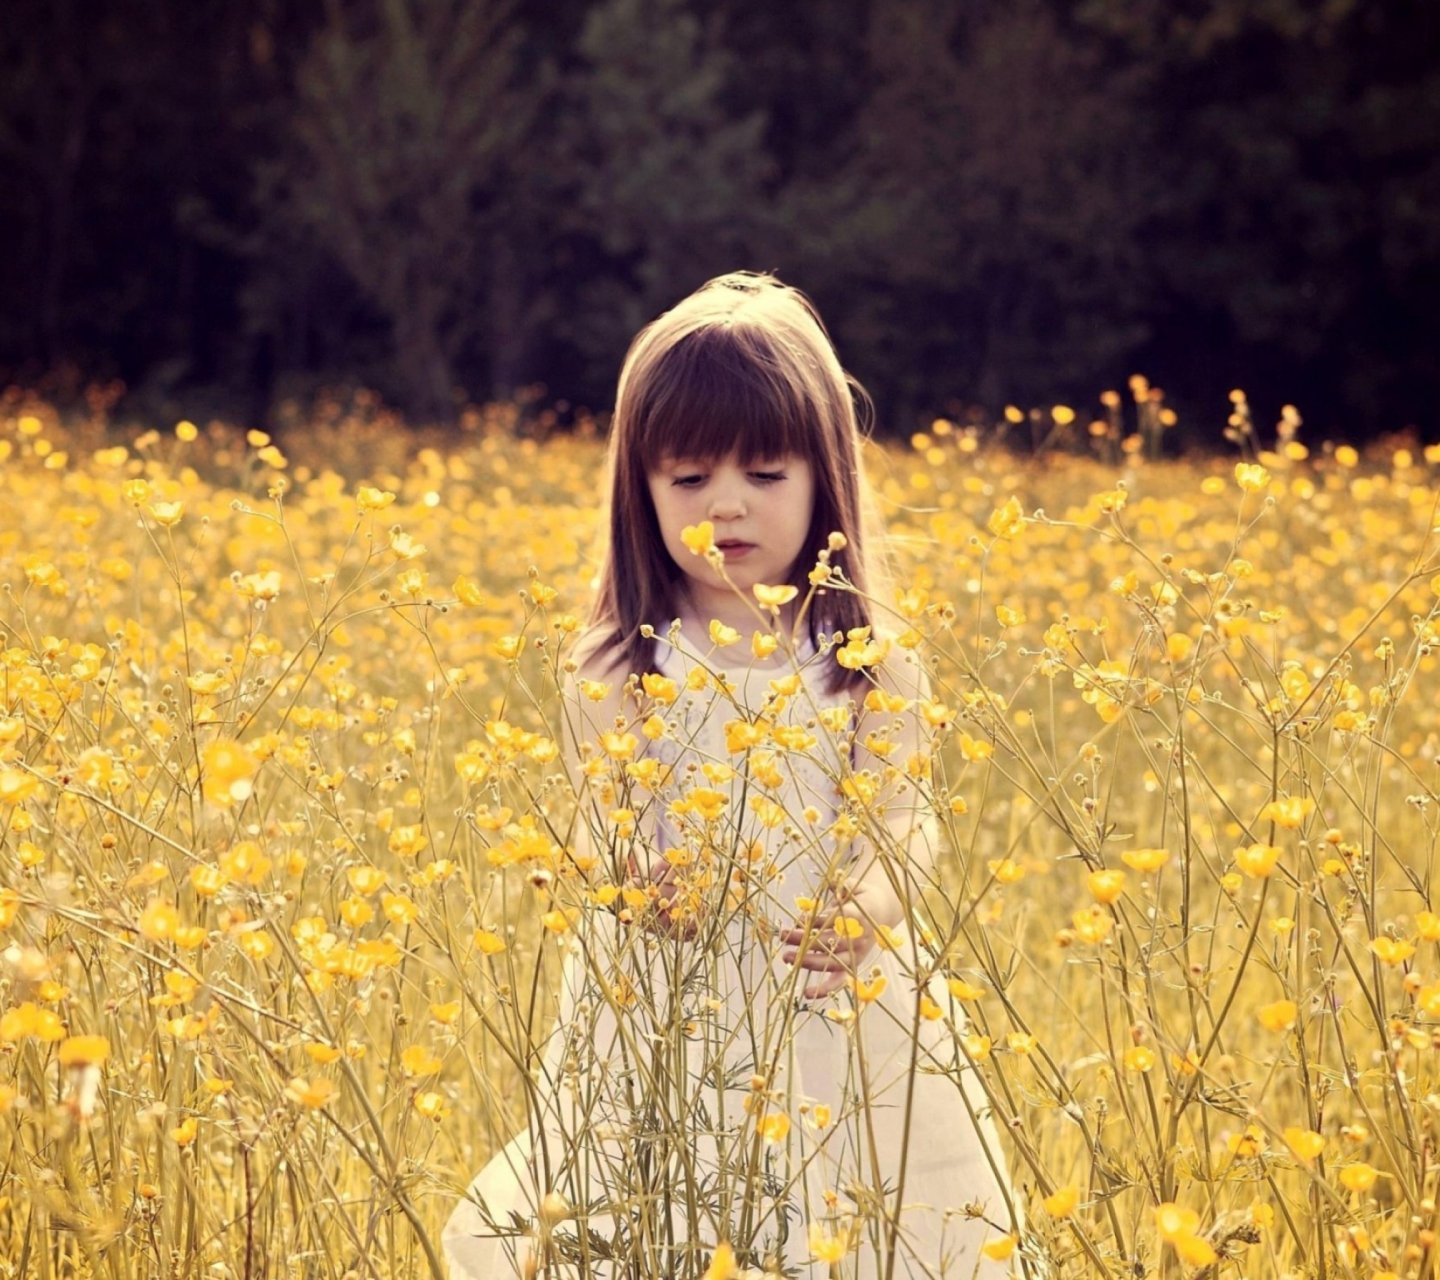 Обои Cute Little Girl In Flower Field 1440x1280